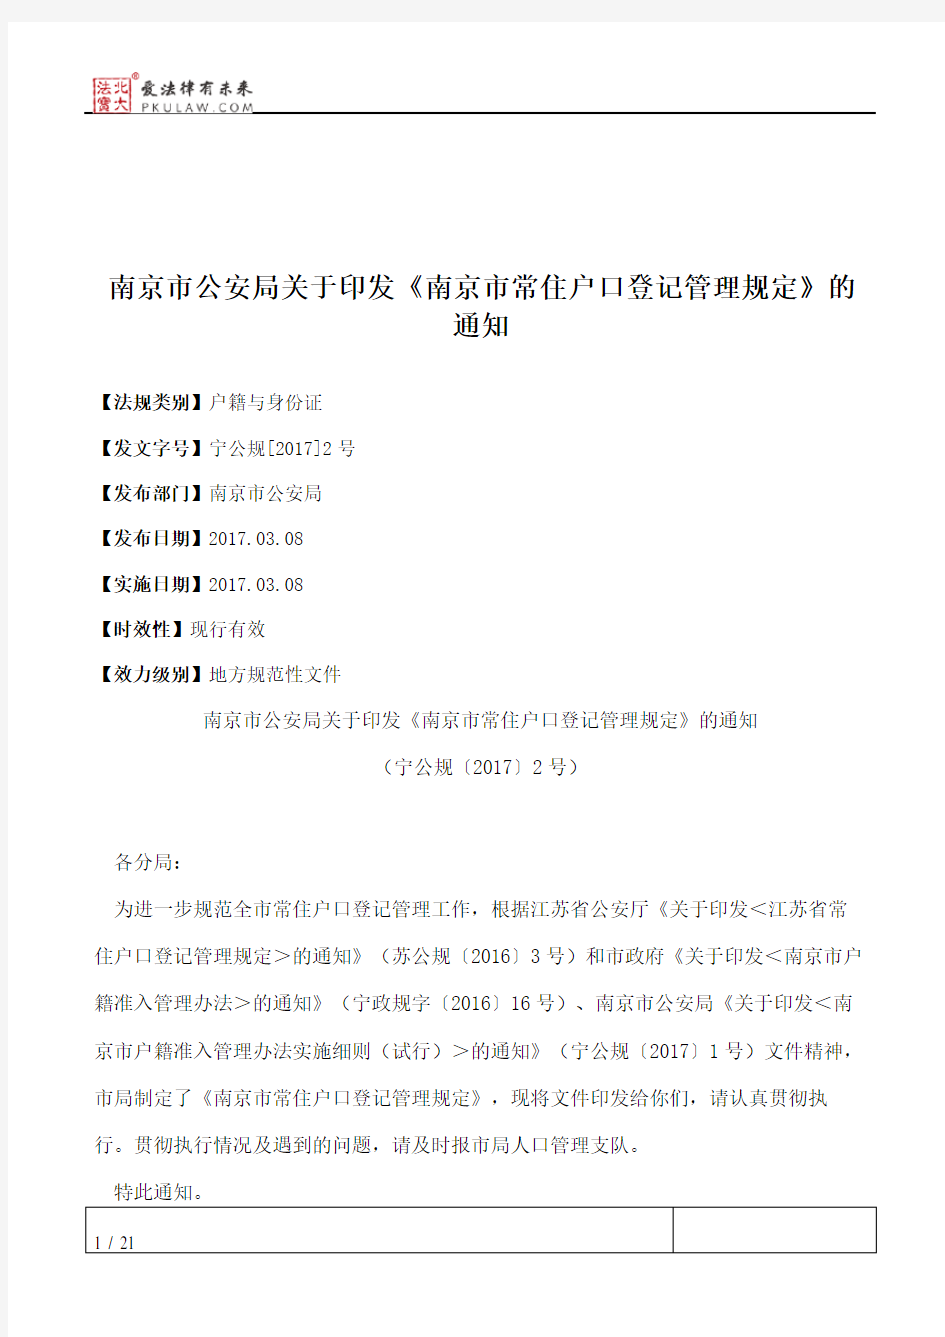 南京市公安局关于印发《南京市常住户口登记管理规定》的通知